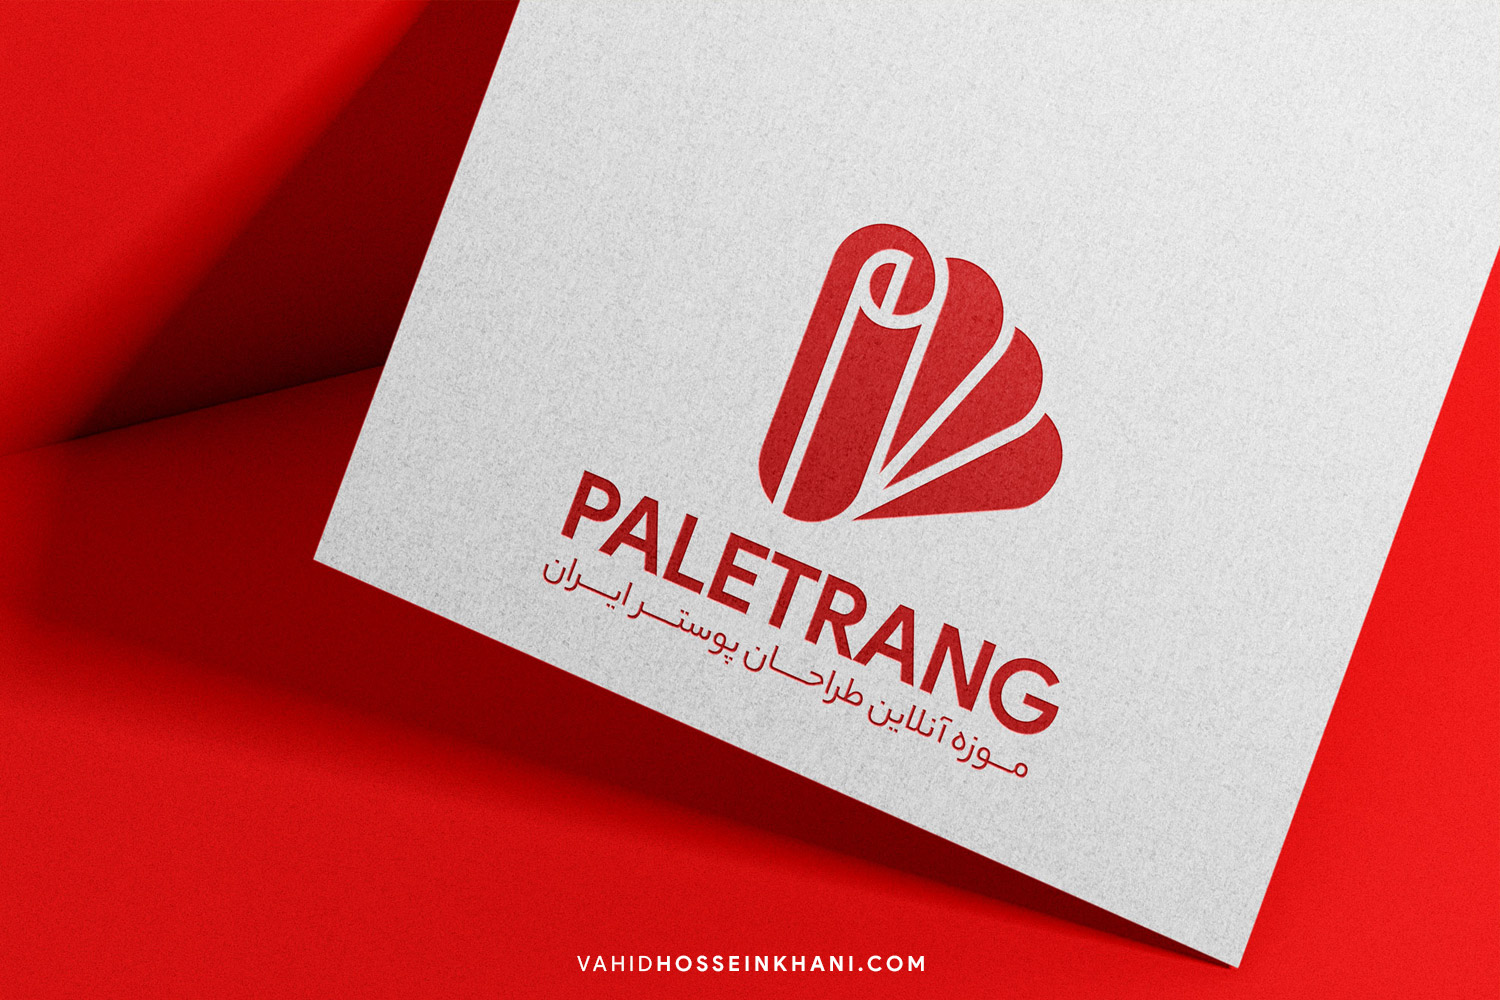 paletrang-logo-vahid-hosseinkhani